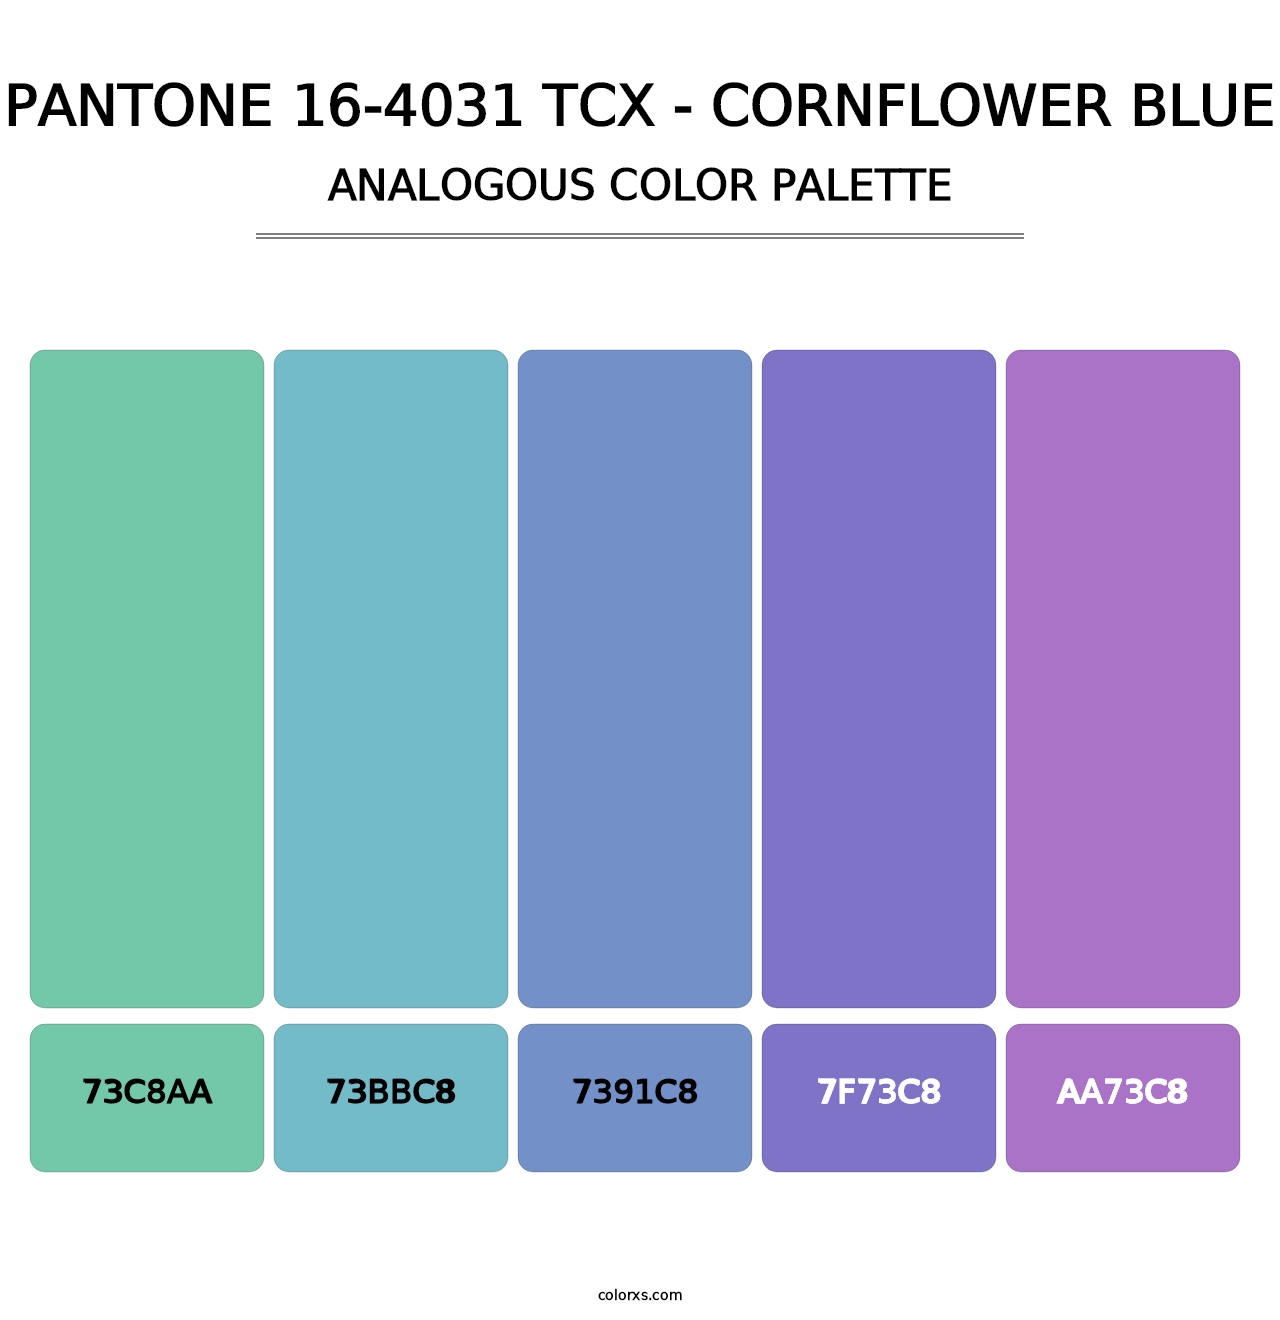 PANTONE 16-4031 TCX - Cornflower Blue - Analogous Color Palette